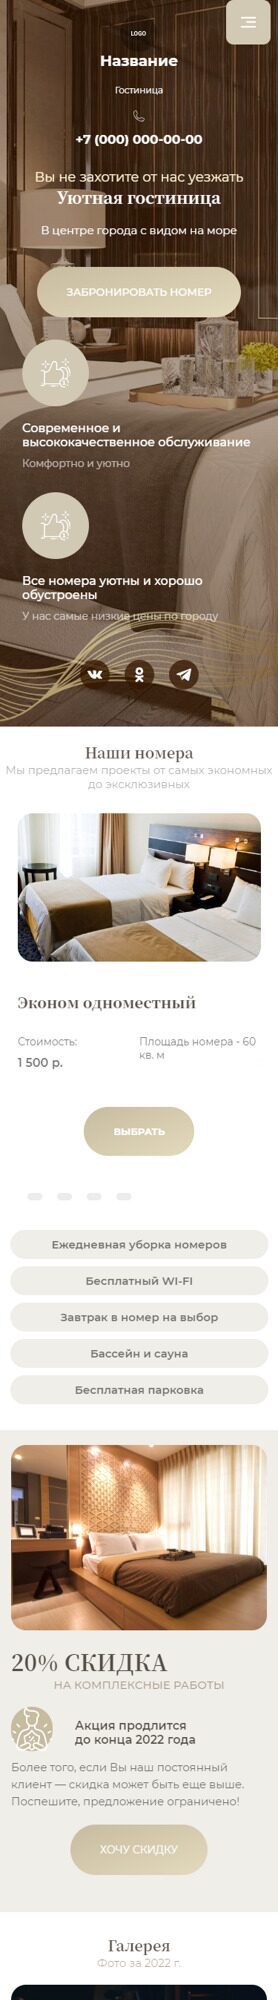 Готовый Сайт-Бизнес № 4063951 - Гостевые дома, отели, гостиница (Мобильная версия)